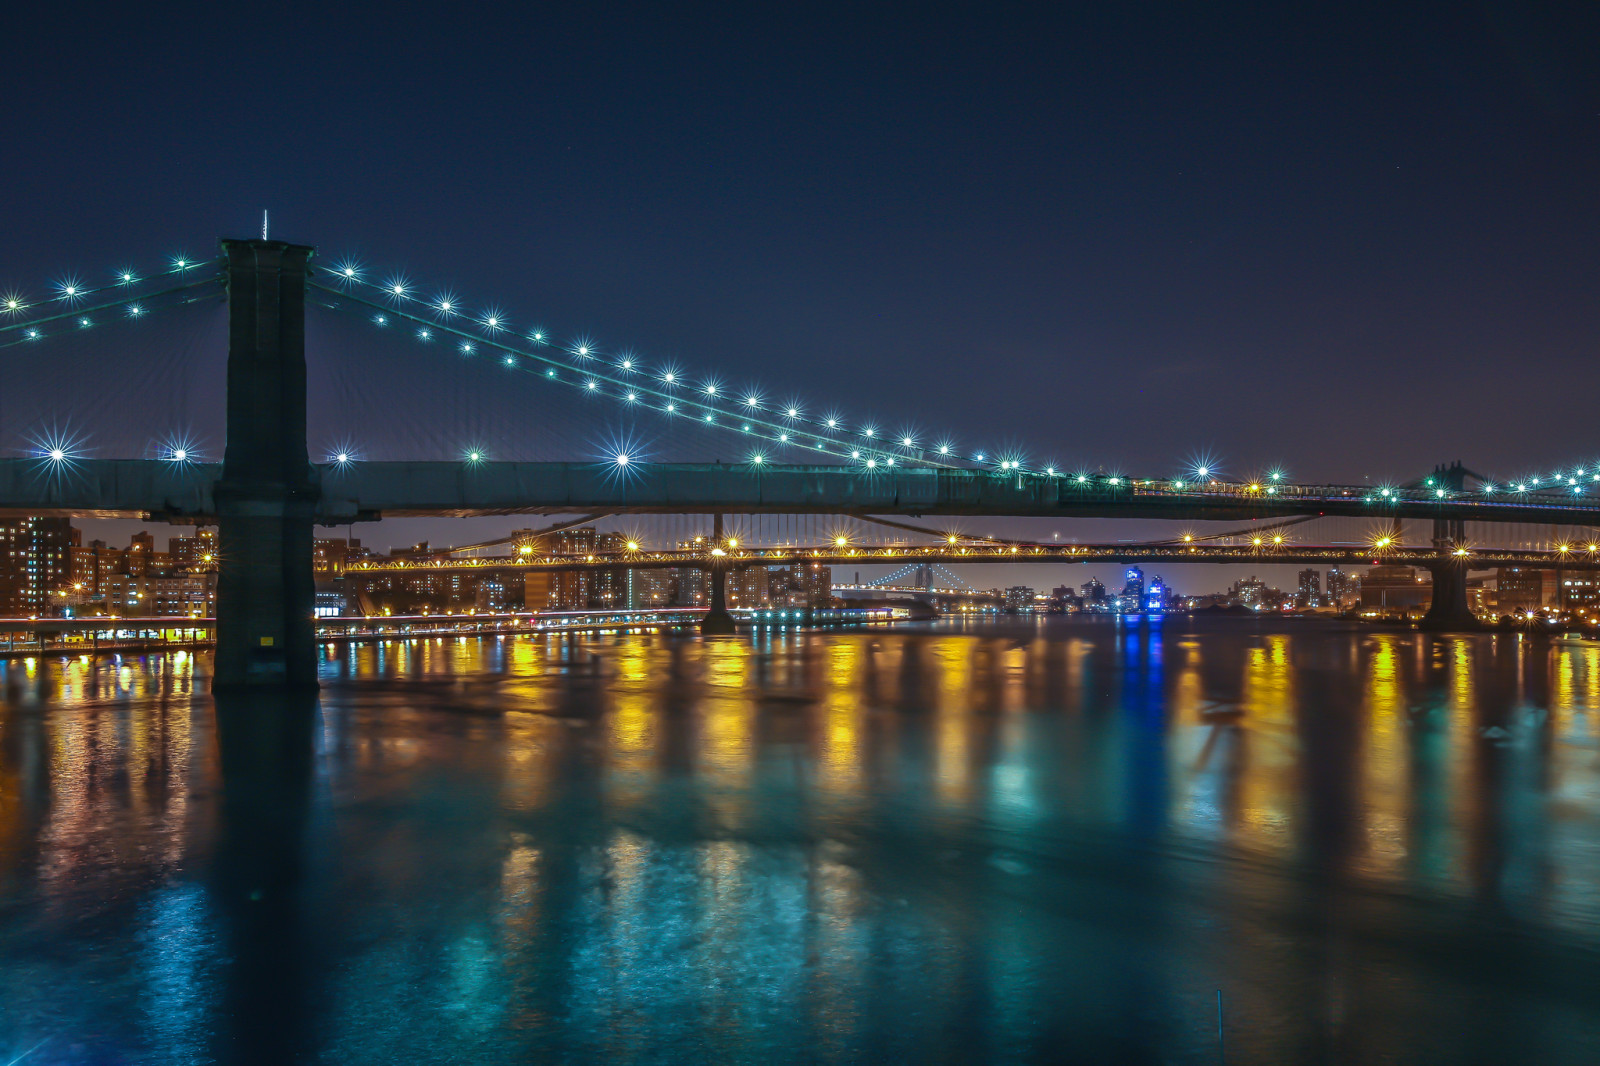 thành phố, đèn, đêm, cầu, thành phố Manhattan, Thành phố New York, brooklyn, Cầu Williamsburg